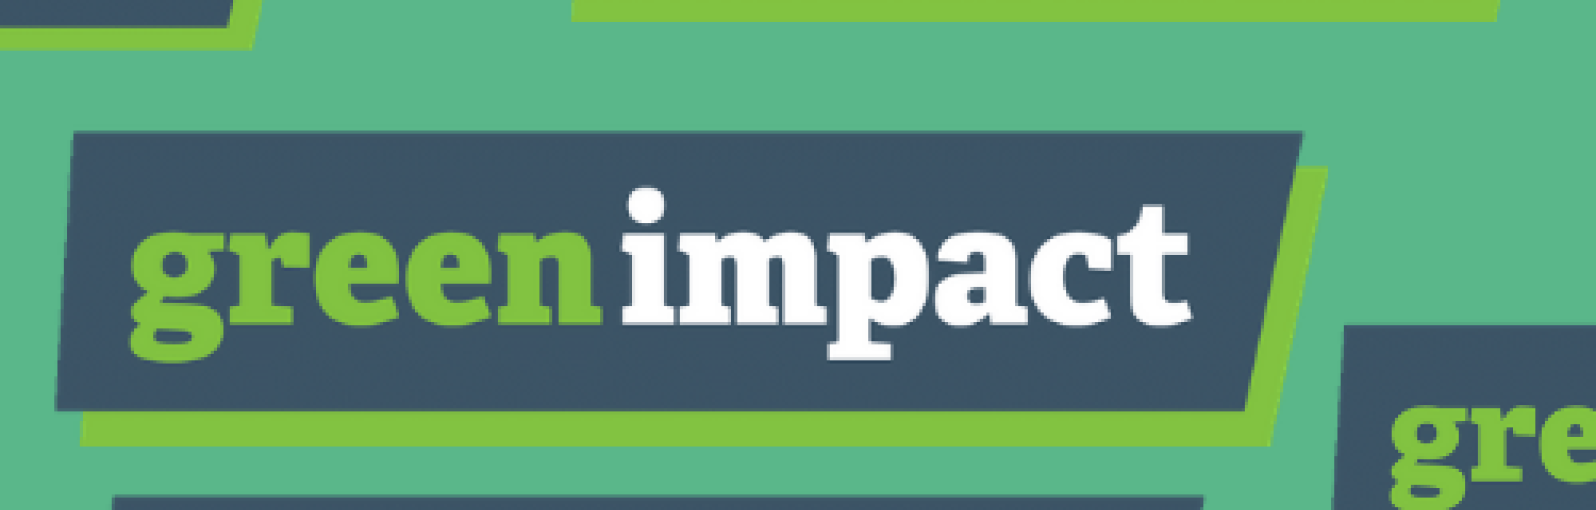 Green Impact logos 